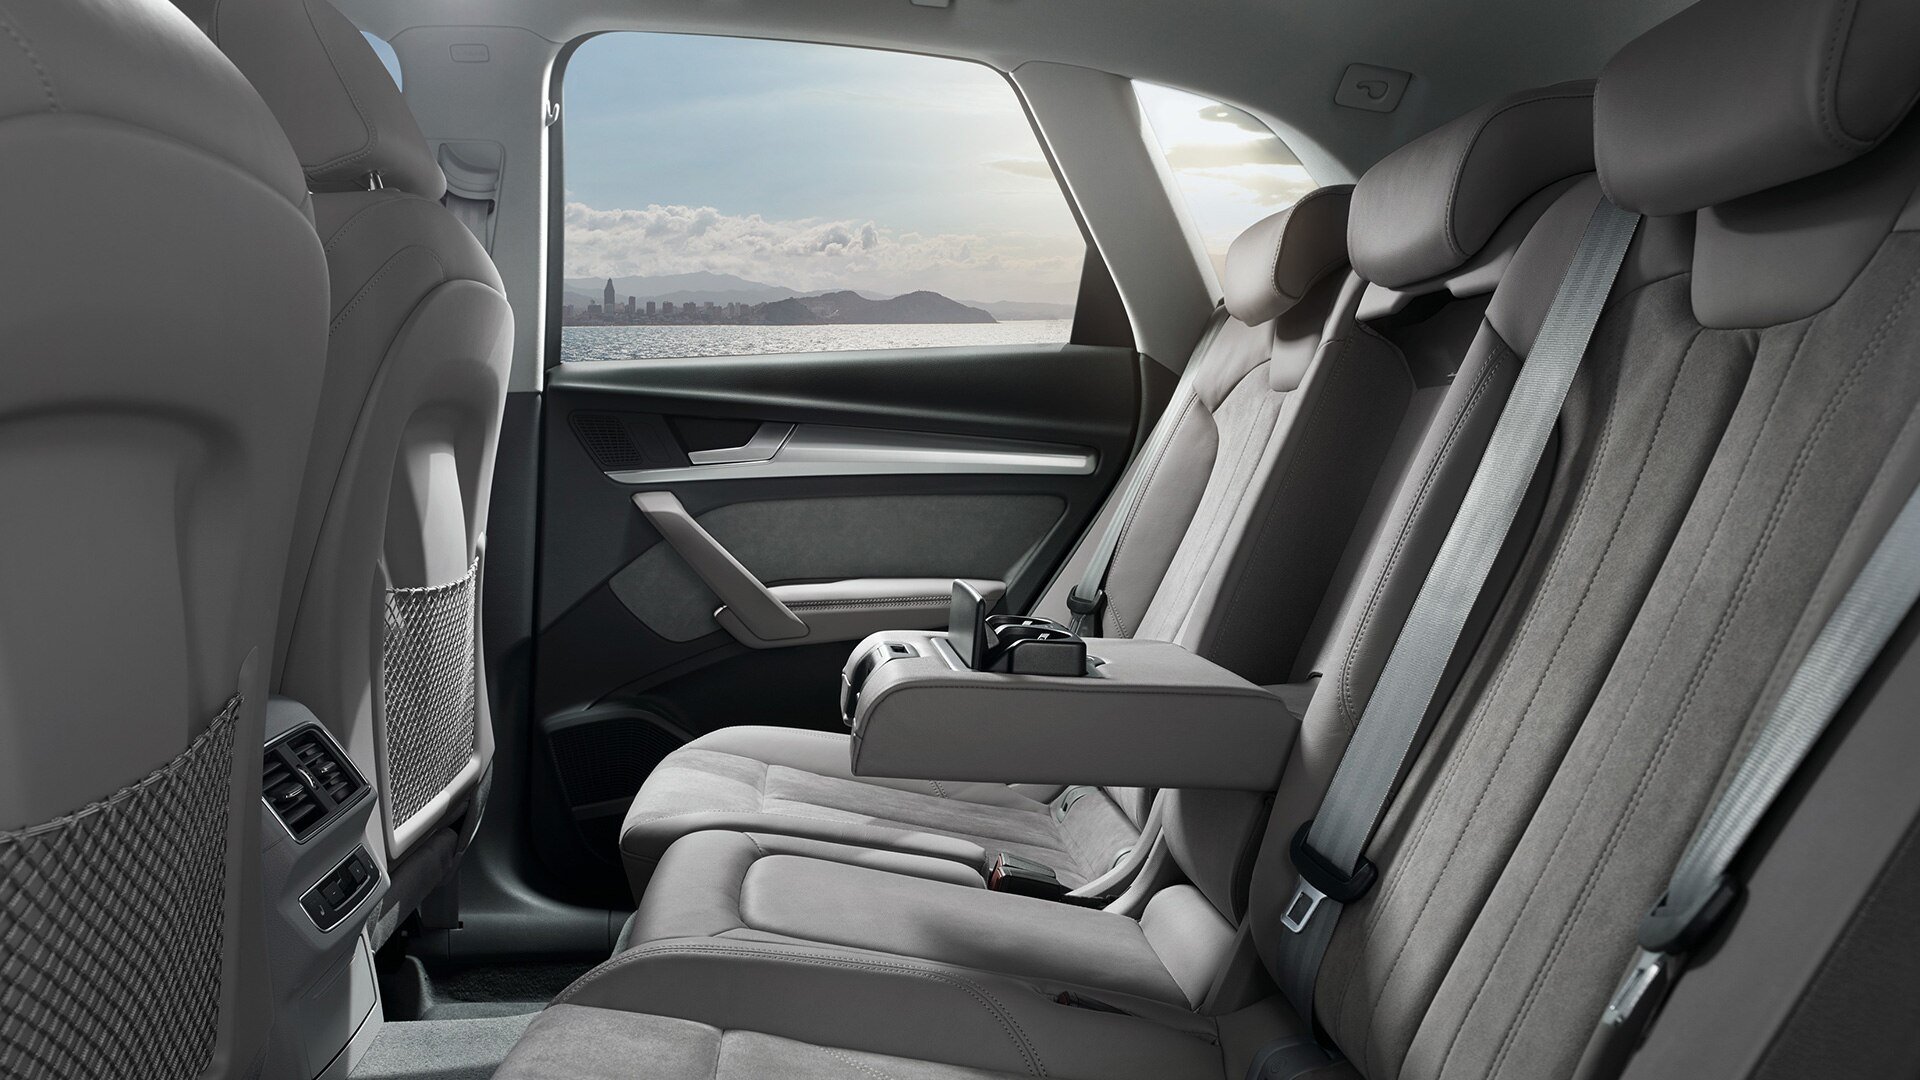 أودي Q5 interior - Rear Seats